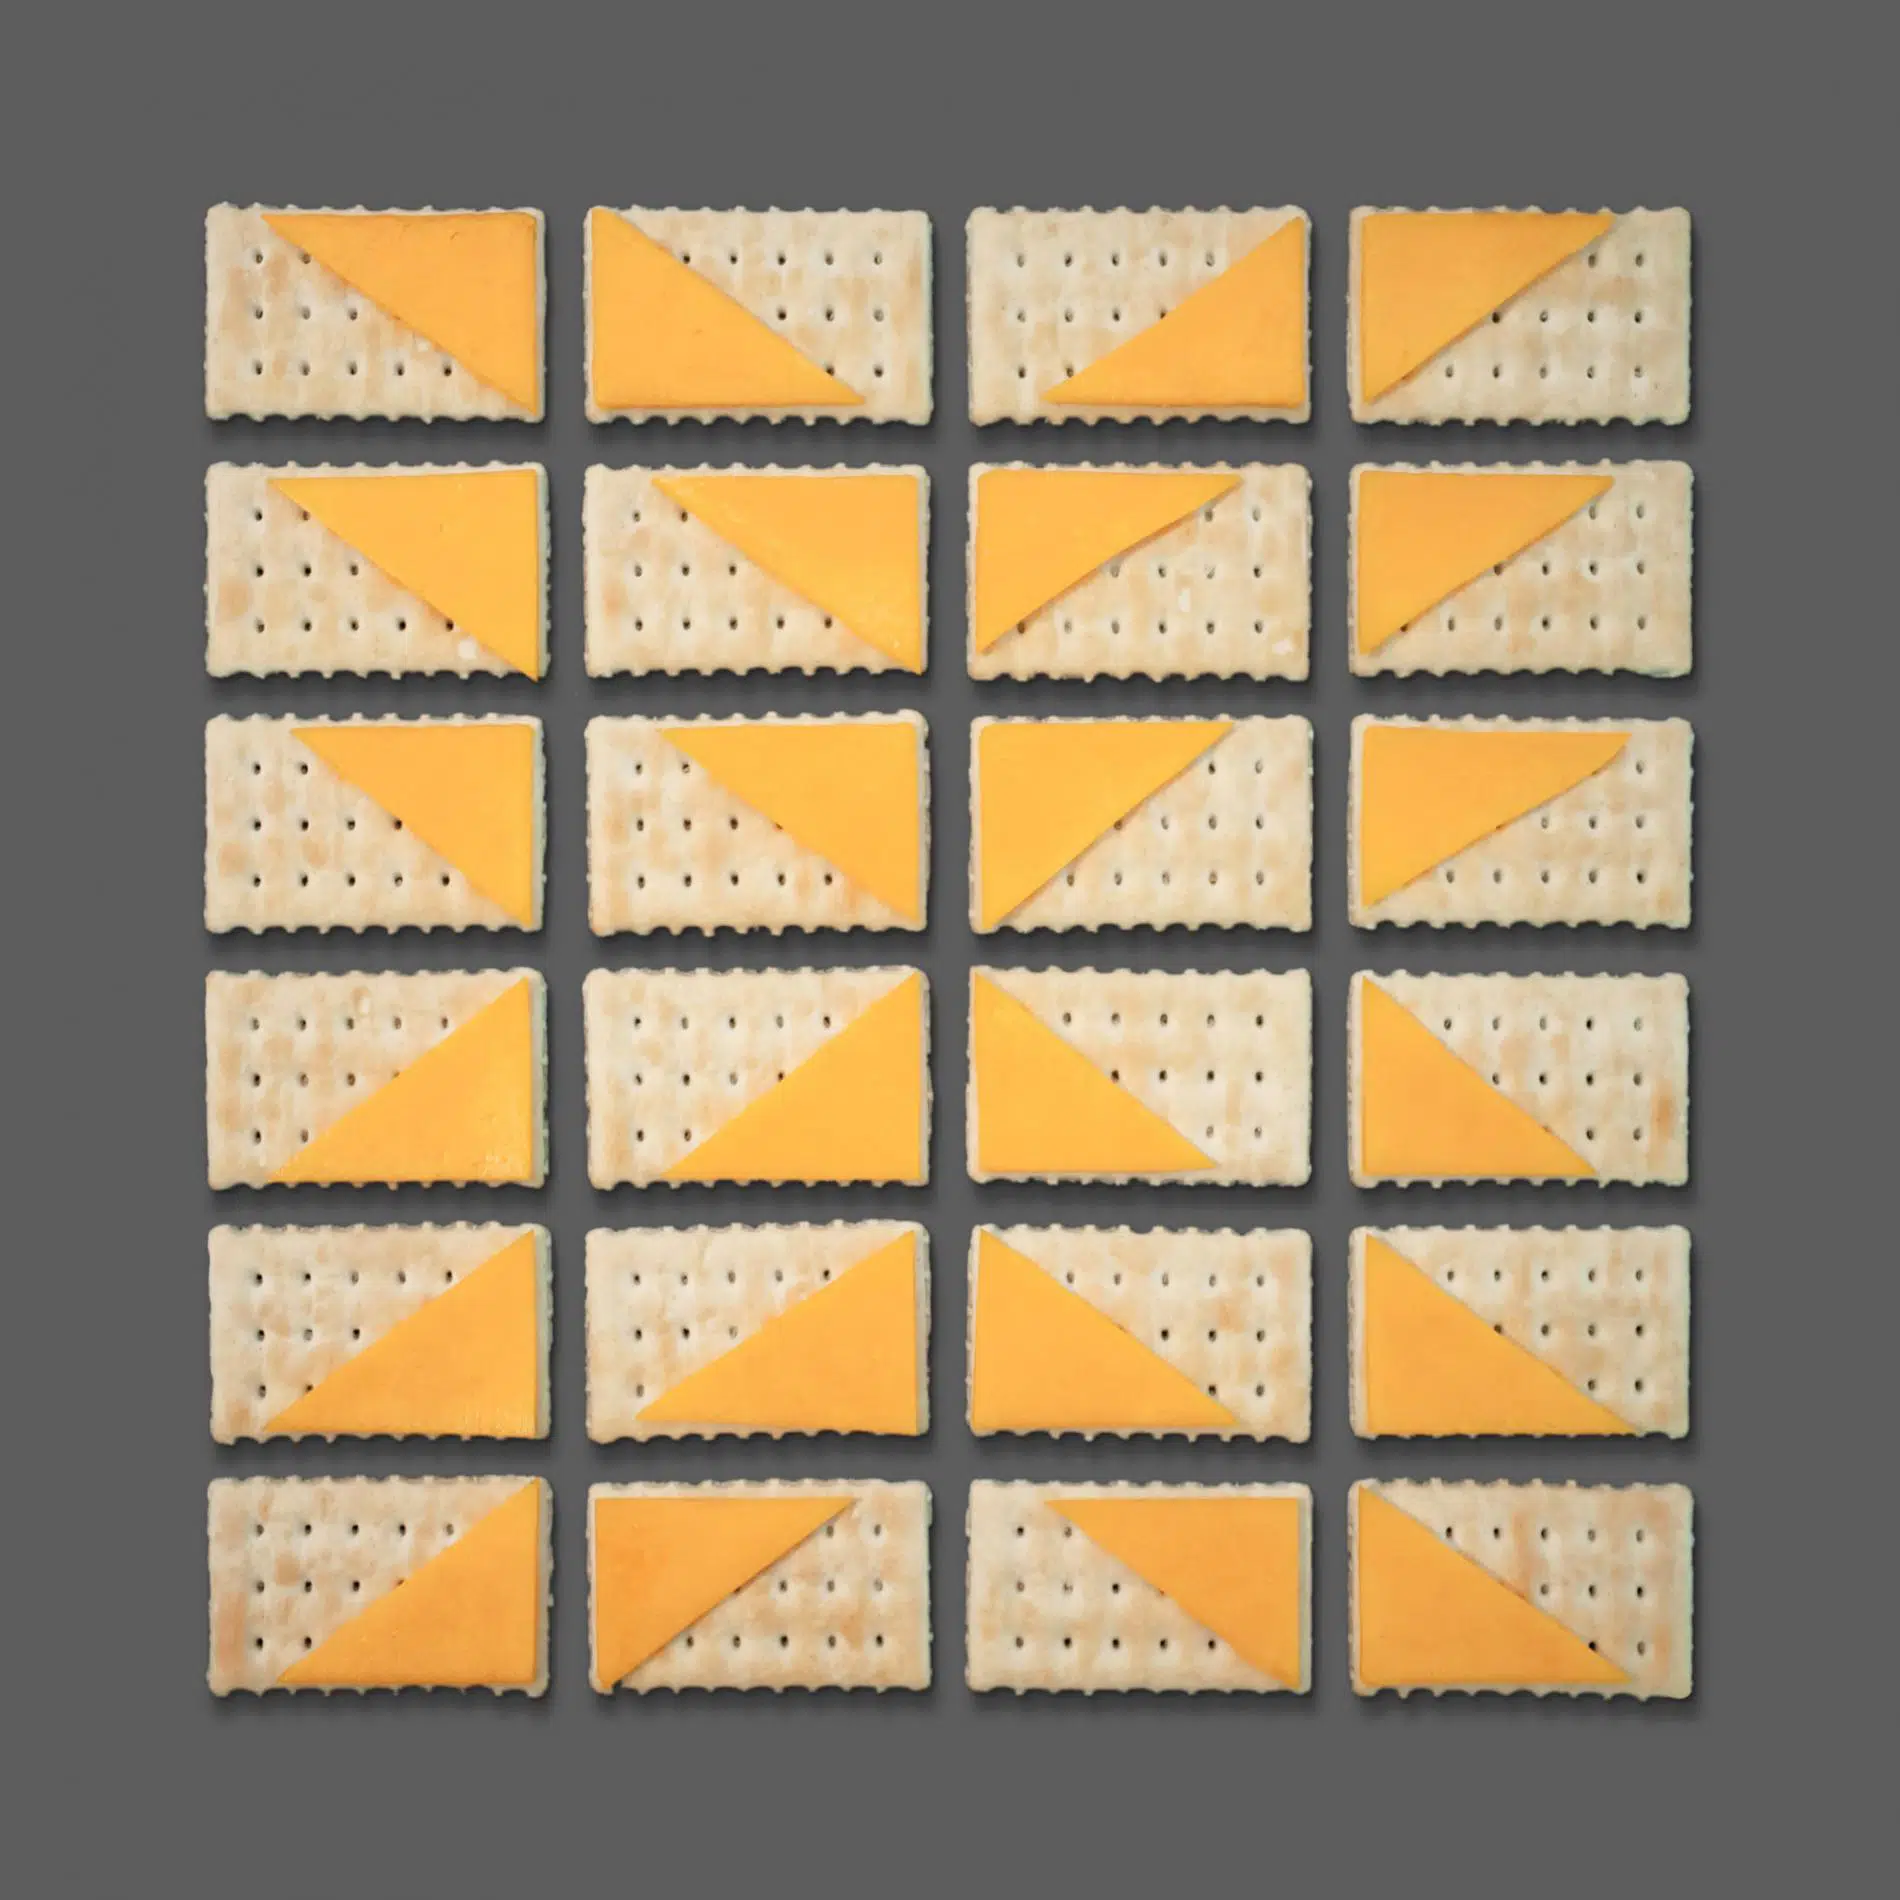 kristen meyers flat lays diseños geometricos con galletas y queso